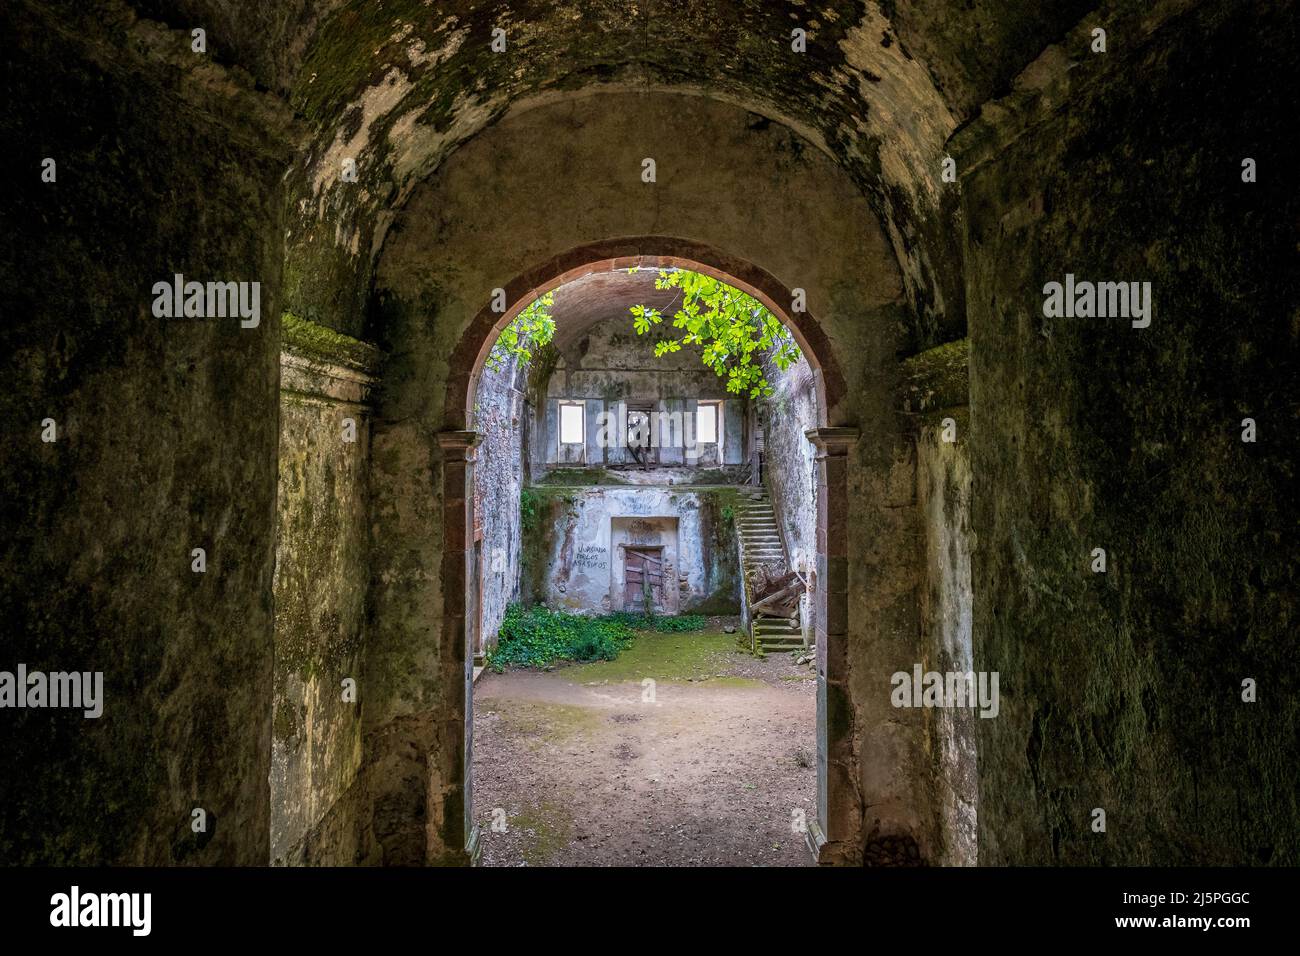 Ruined interior of the Convento de Nossa Senhora do Desterro, along the Via Algarviana, Monchique, Portugal Stock Photo